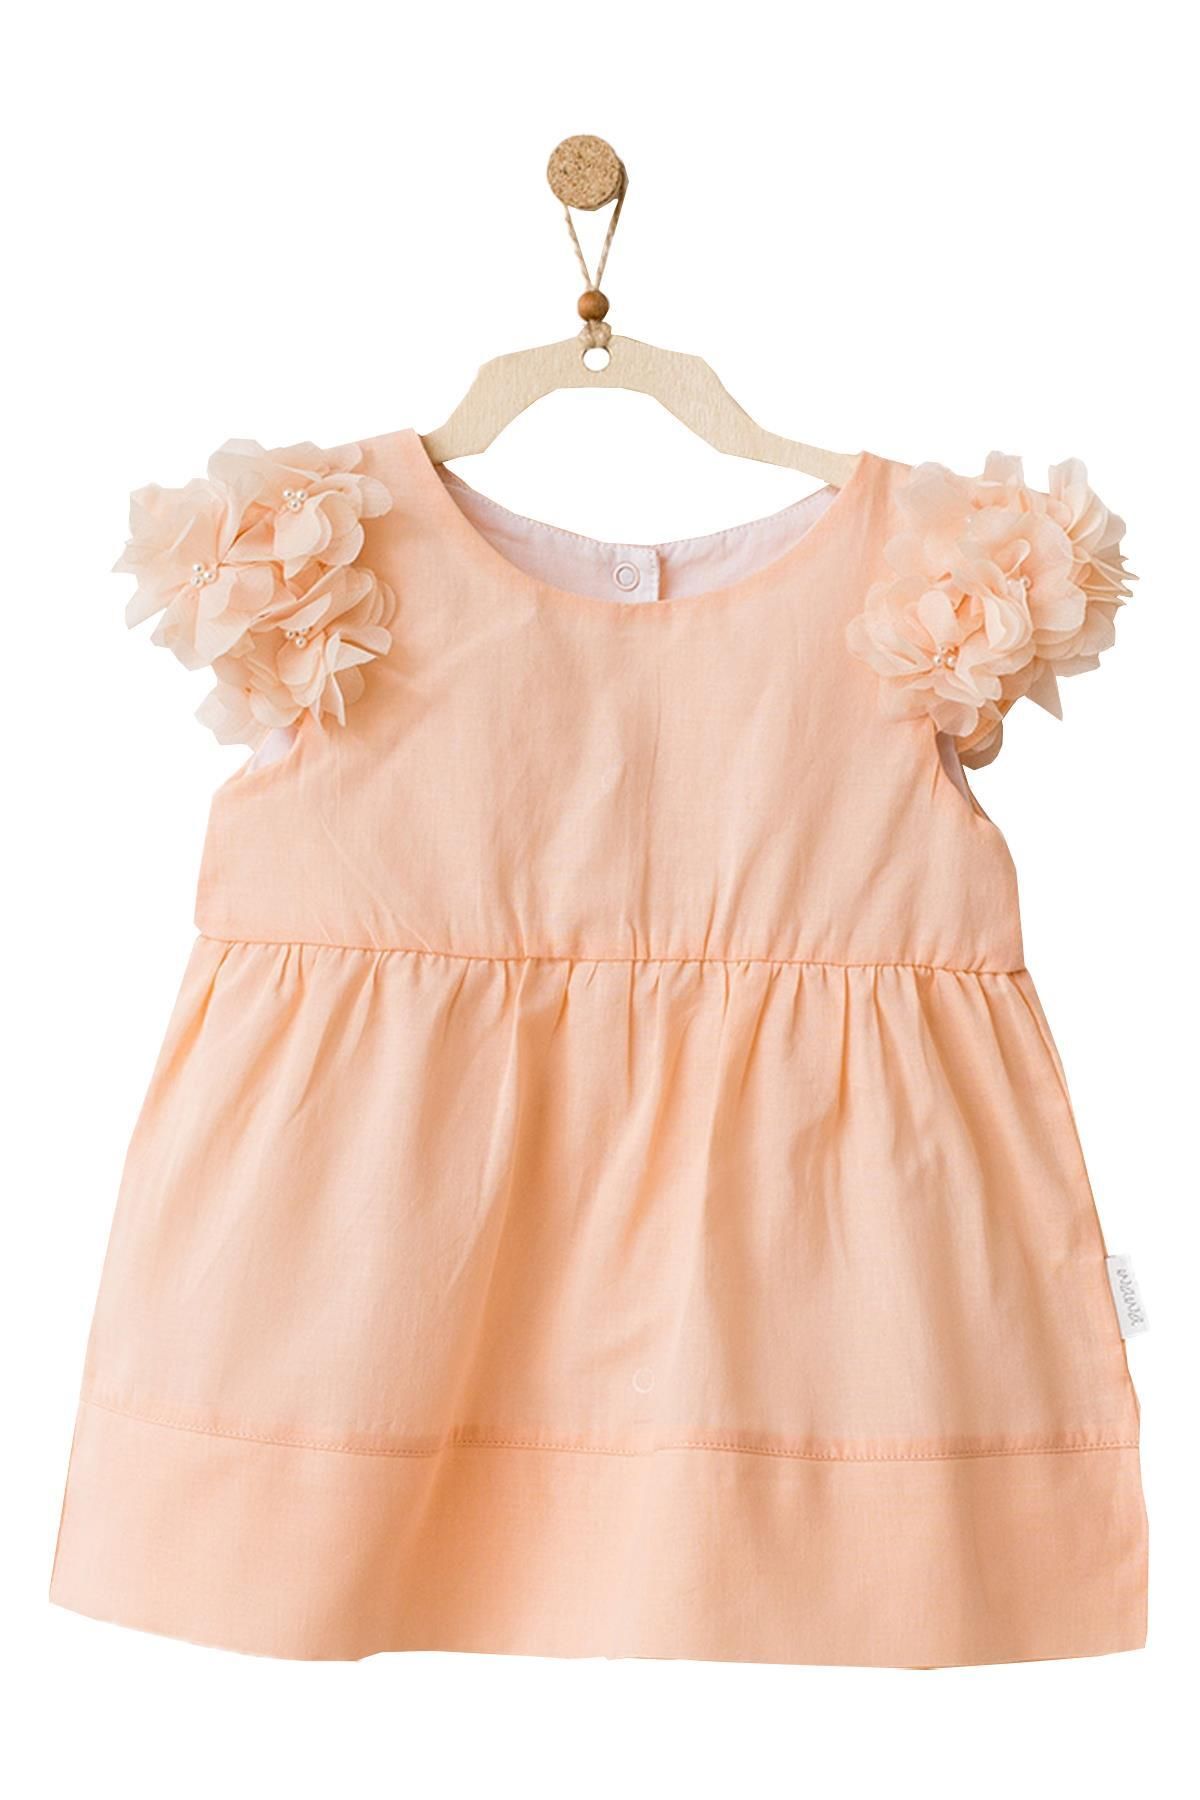 Andy Wawa Kız Bebek Kolları Tüllü Somon Rengi Elbise Takım Ac21752r